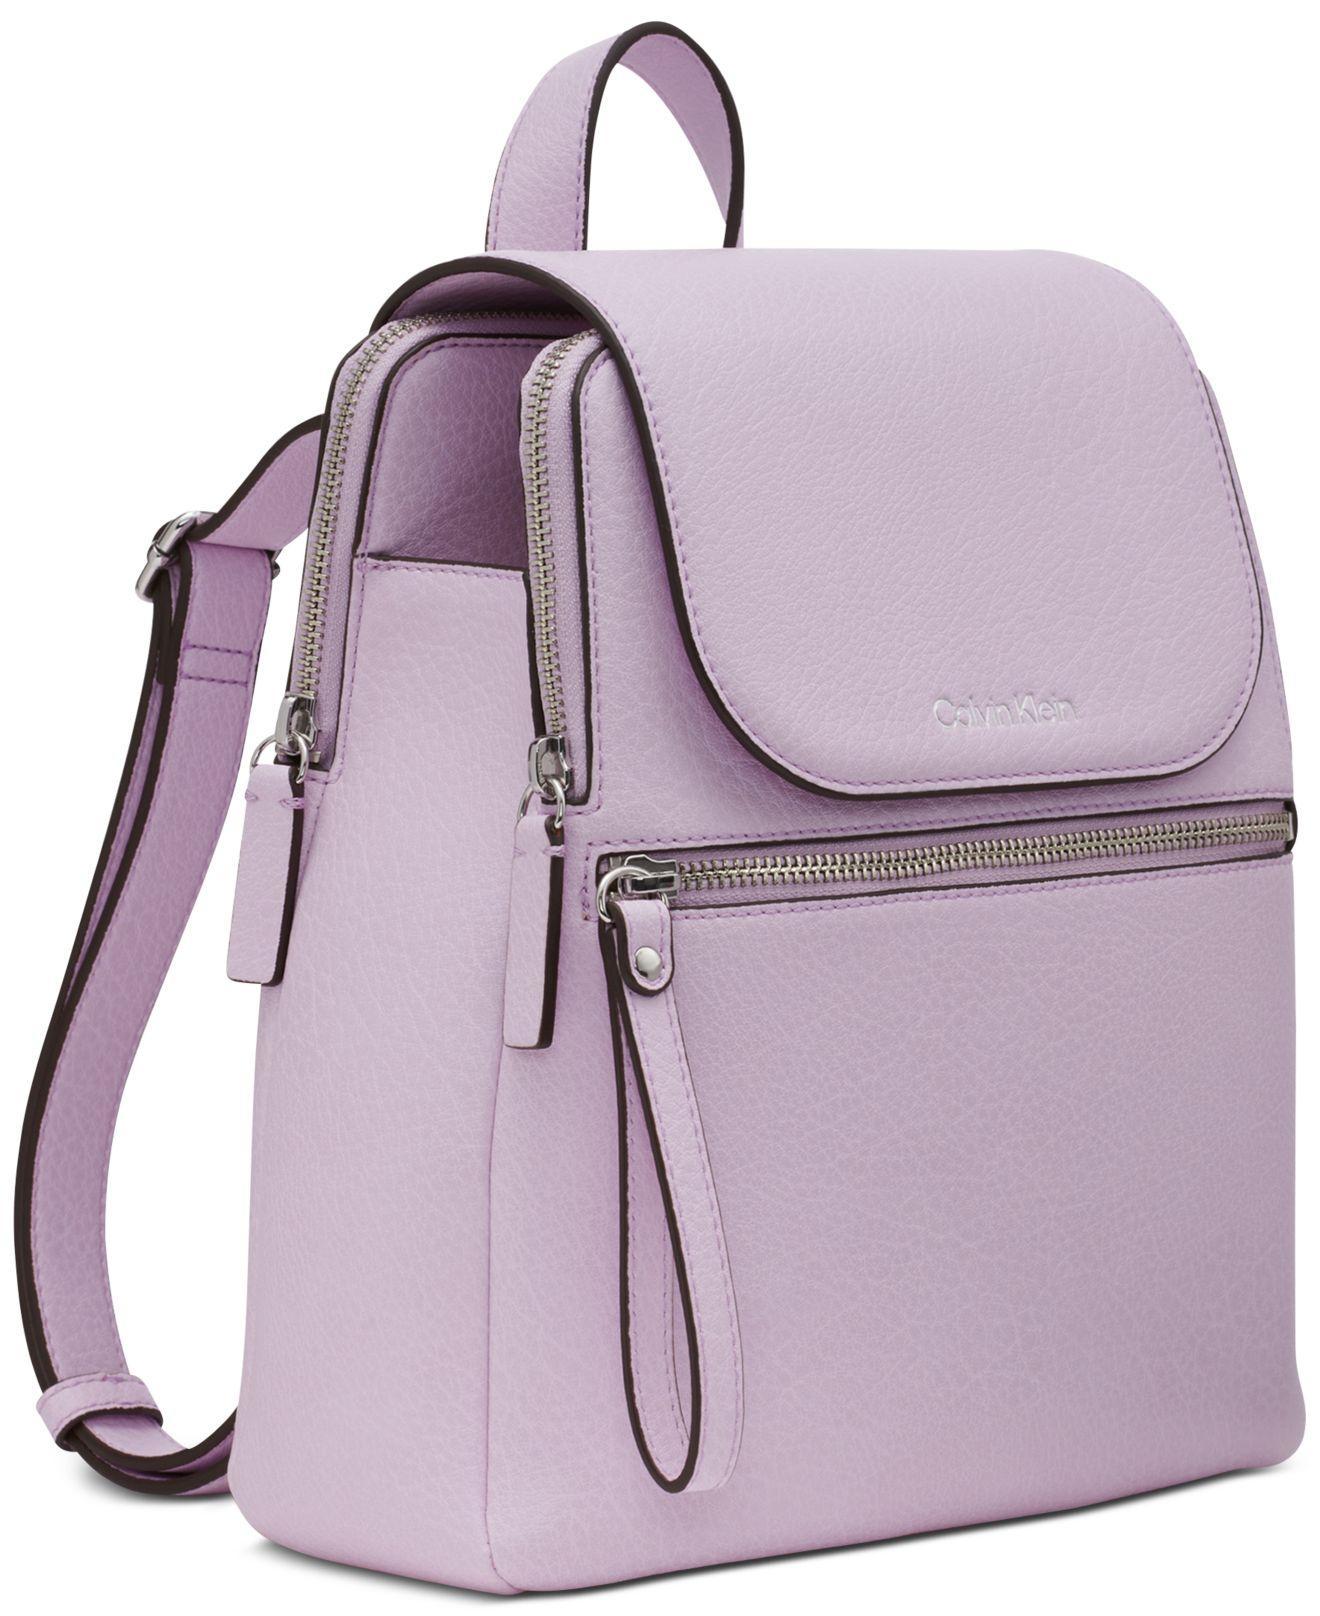 Callie Mini | Candy Pink Metallic Nappa Leather Mini Clutch Bag | JIMMY CHOO